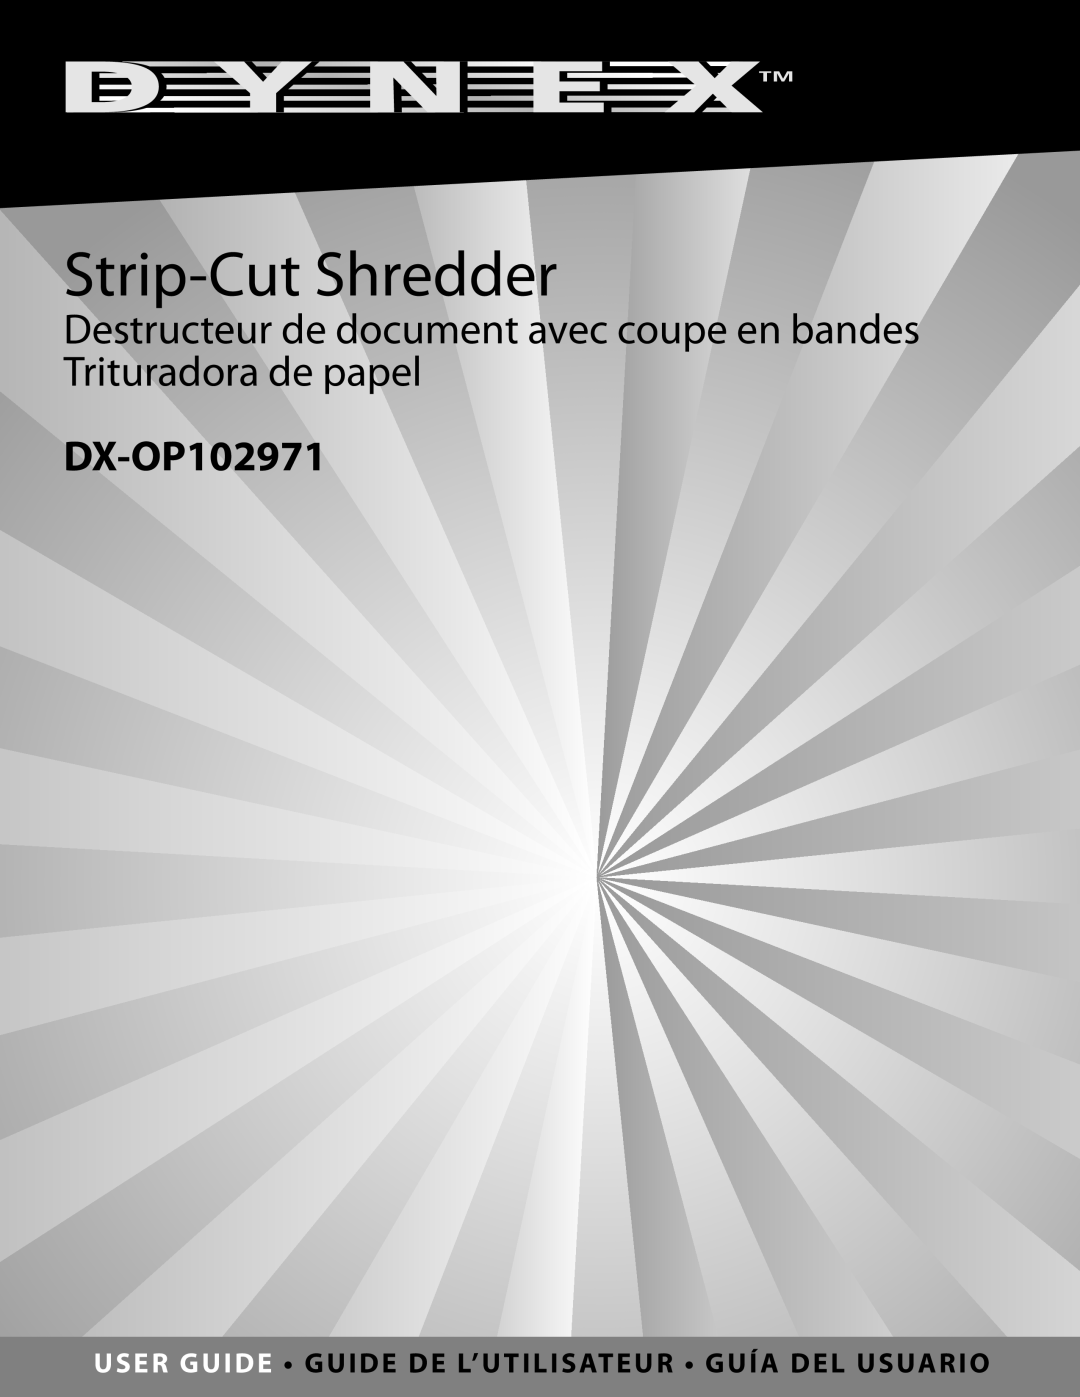 Dynex DX-OP102971 manual Strip-Cut Shredder, Destructeur de document avec coupe en bandes Trituradora de papel 